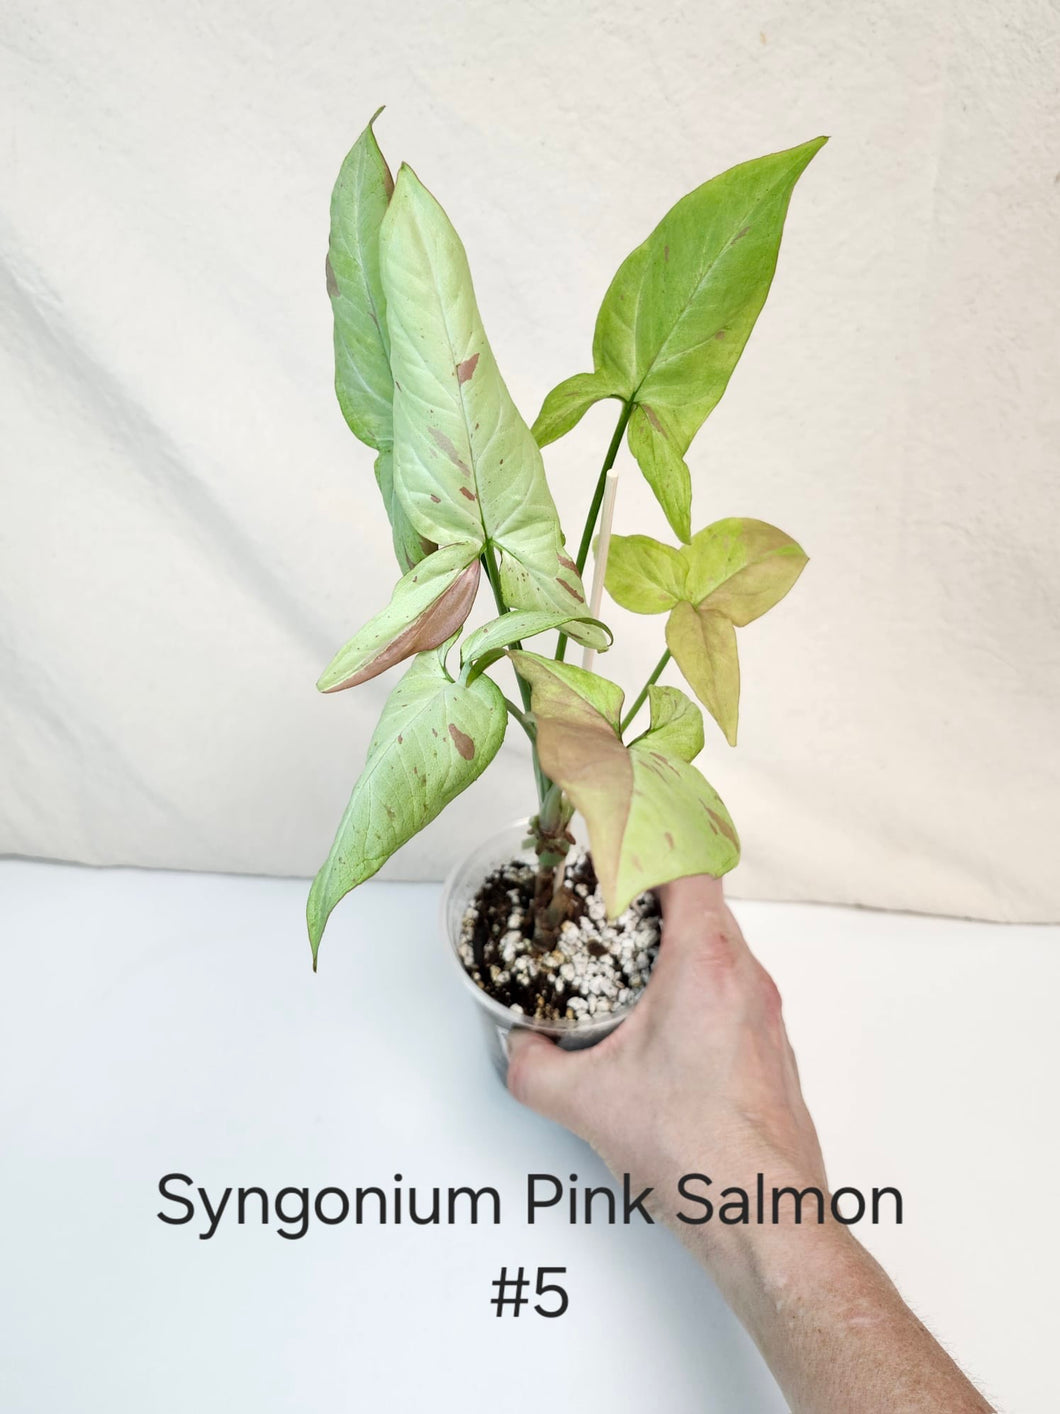 Syngonium pink salmon #5